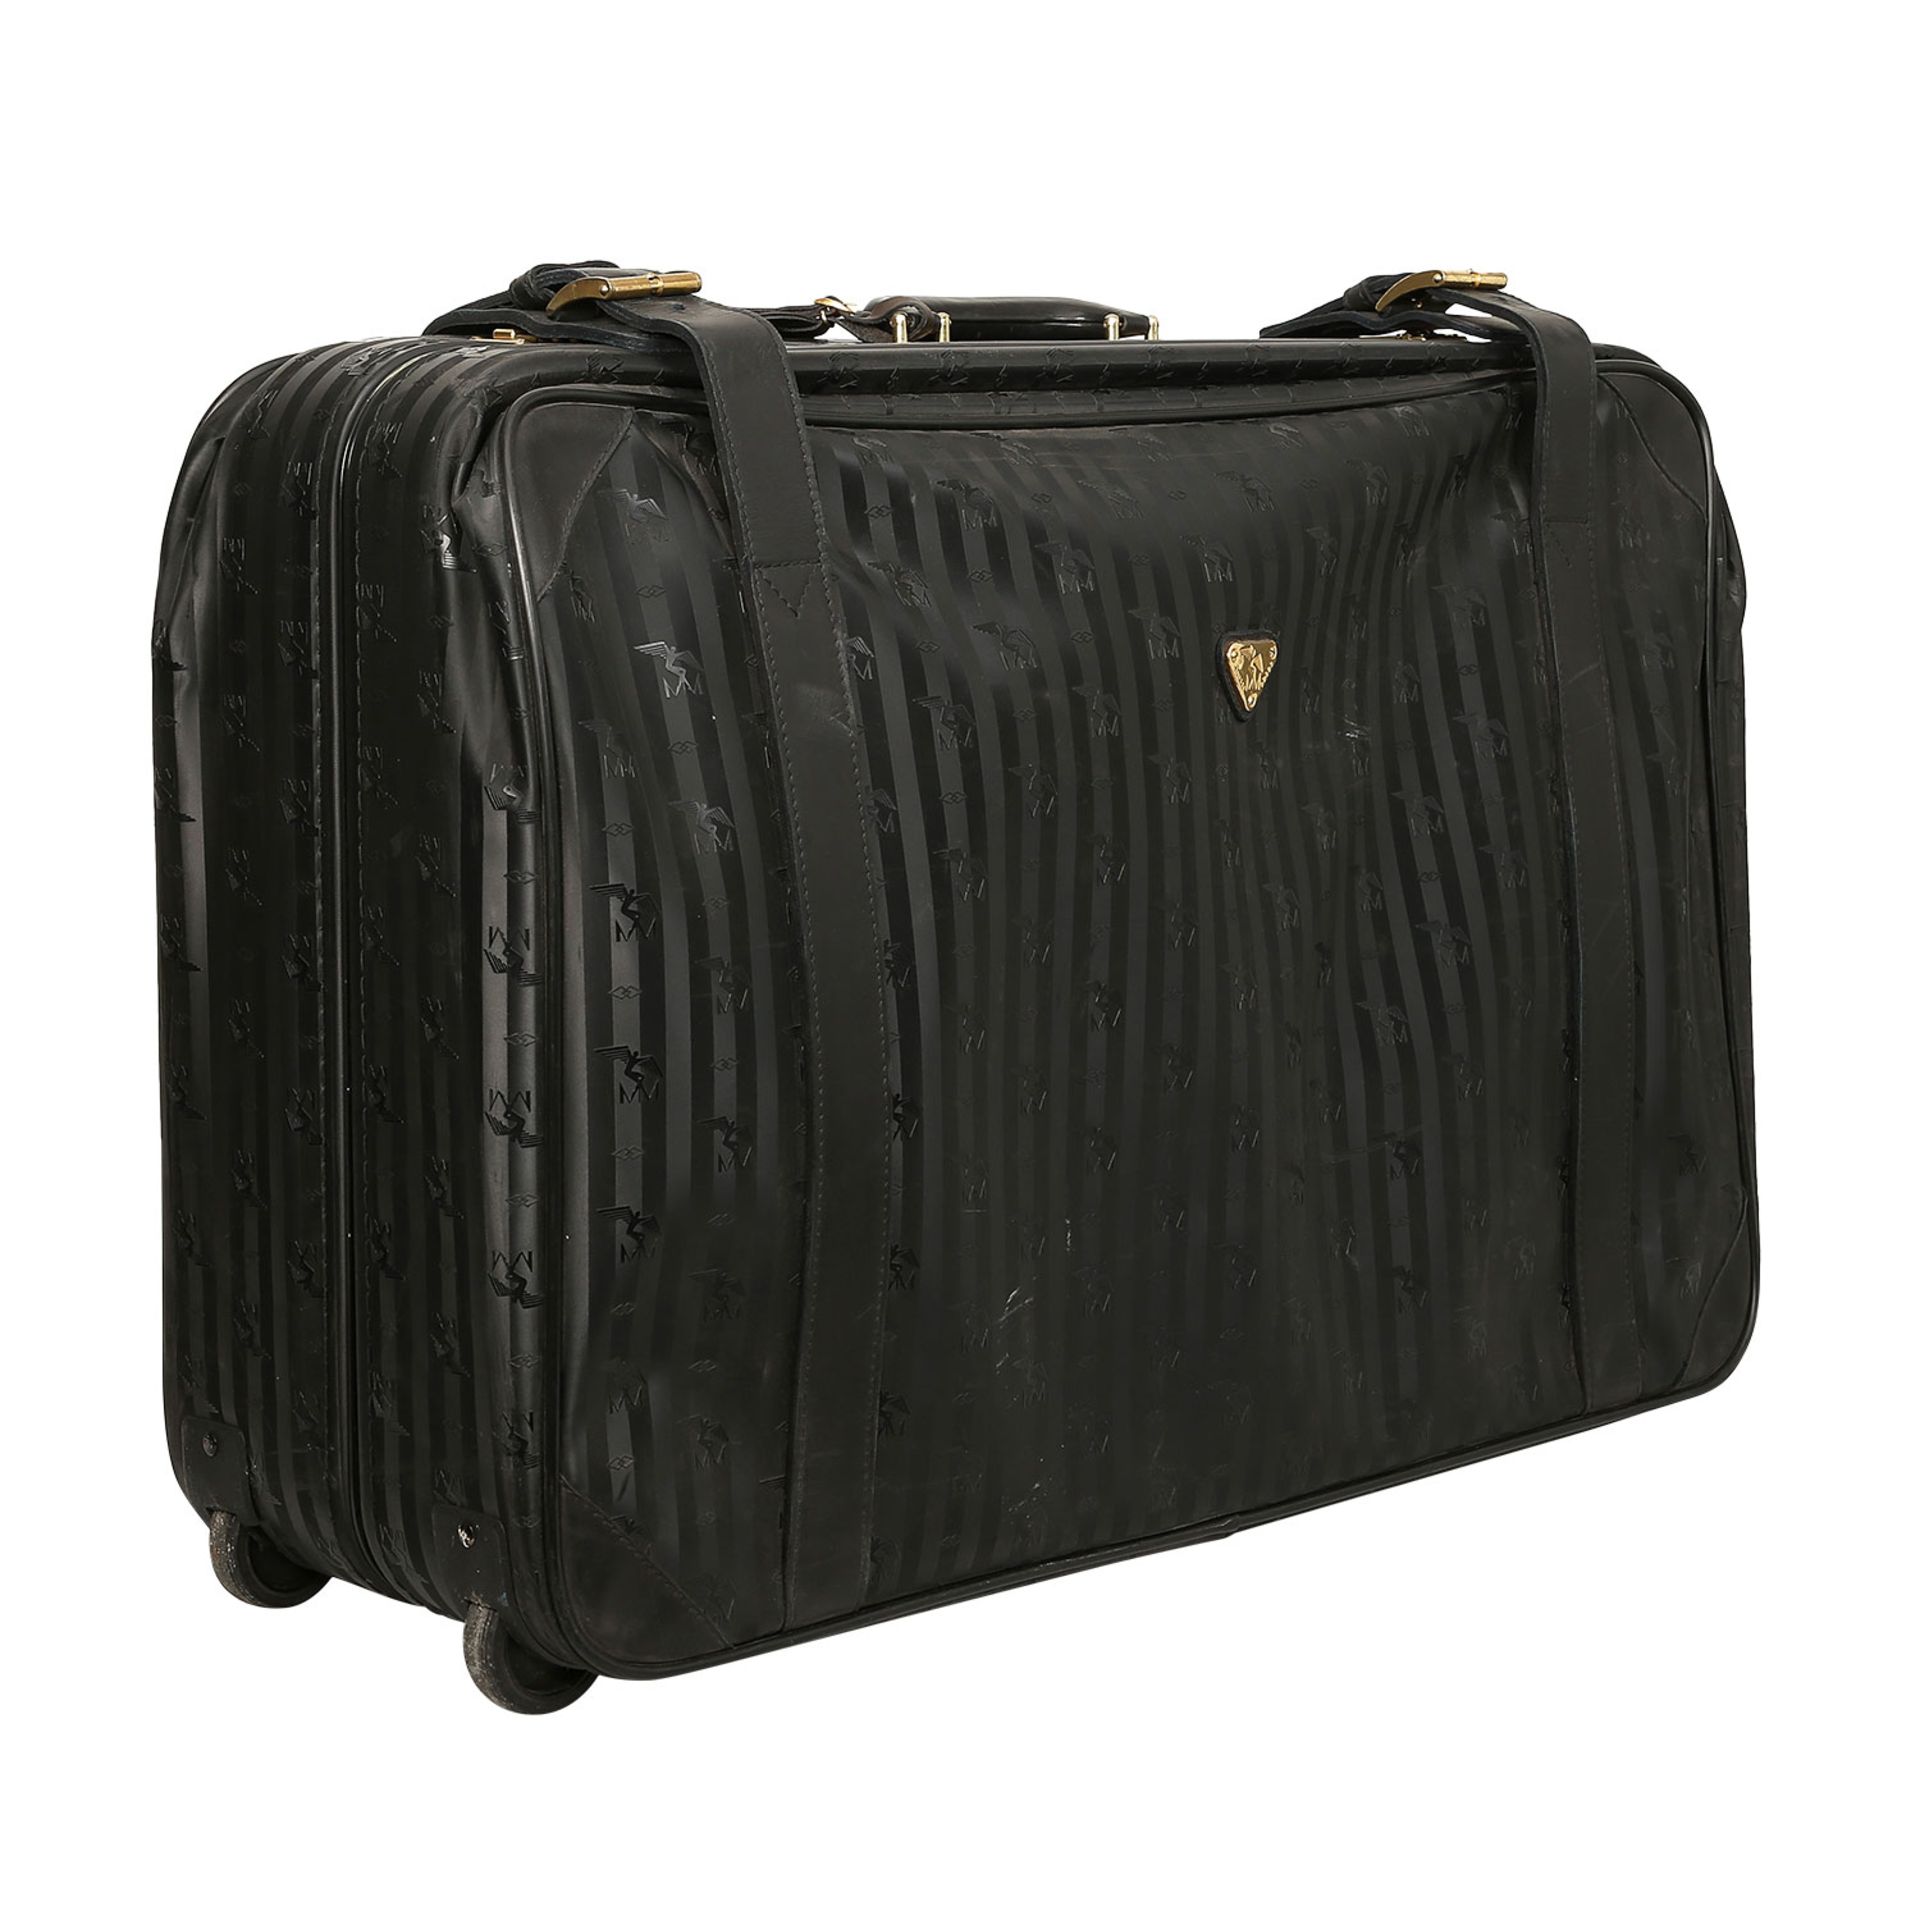 MAISON MOLLERUS VINTAGE Koffer.Synthetik in Schwarz mit Logo-Struktur und goldfarbener Hardware, - Bild 2 aus 6